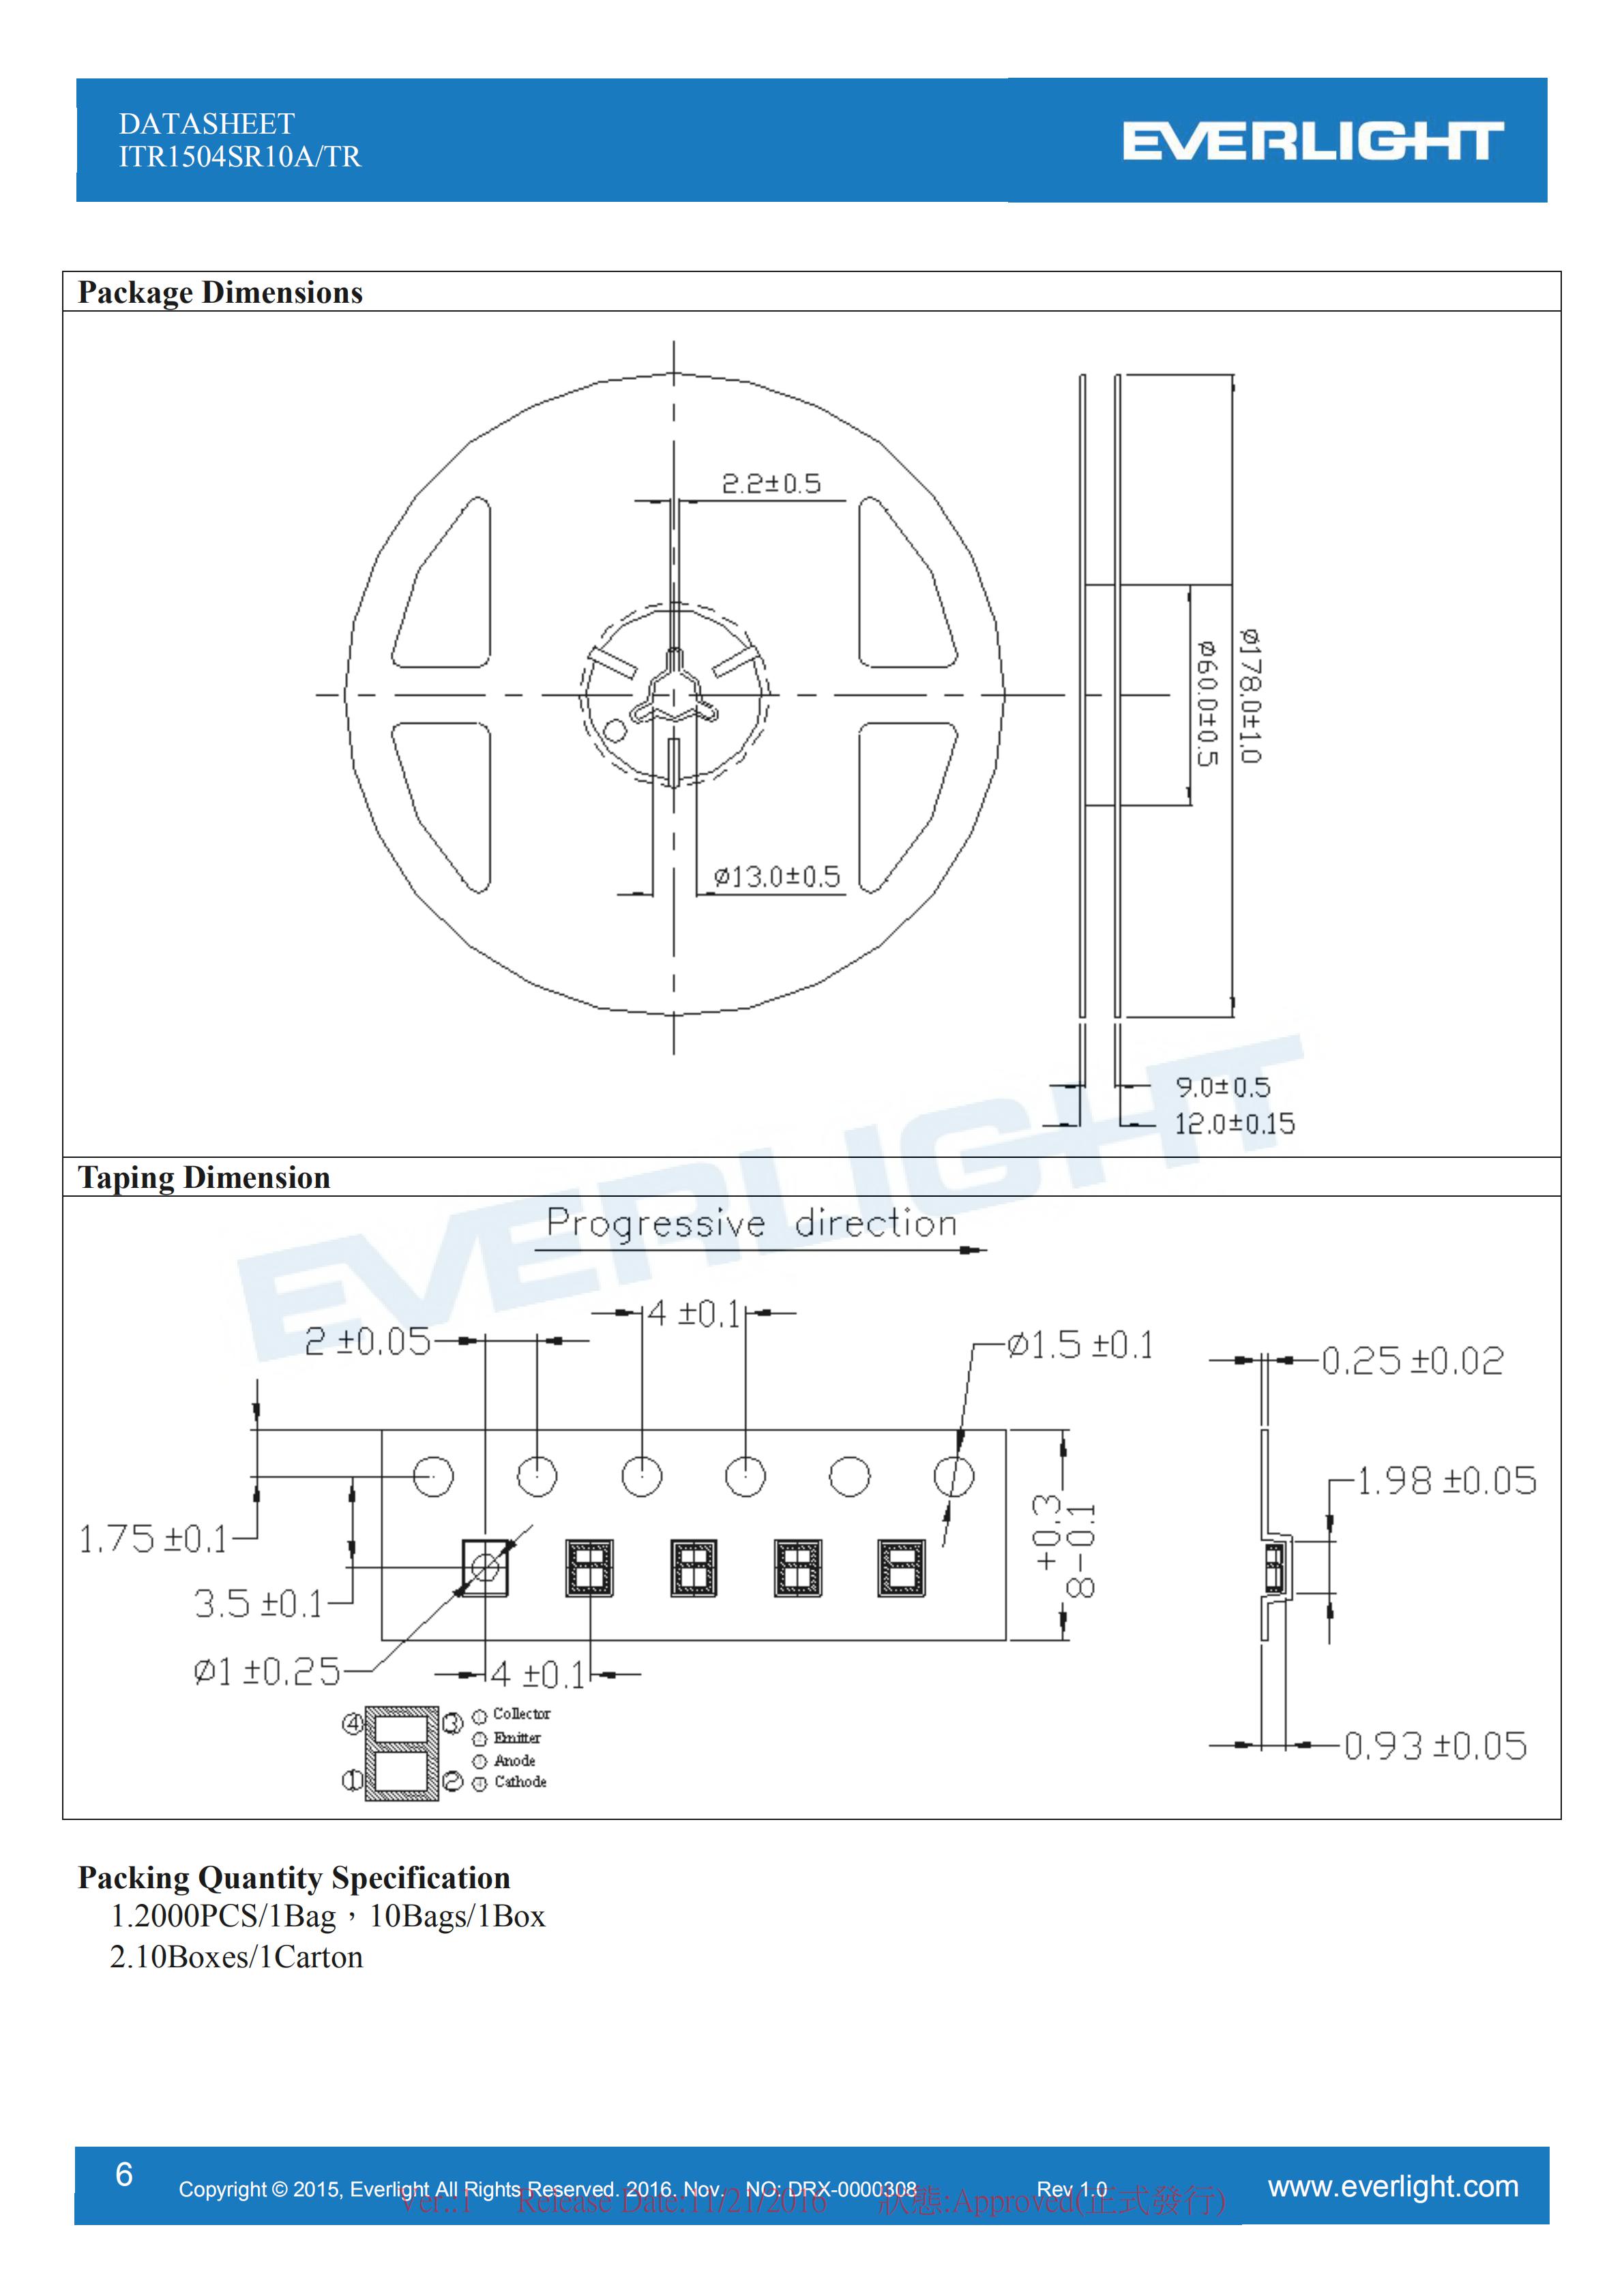 EVERLIGHT Optical Switch ITR1504SR10A/TR Opto Interrupter Datasheet